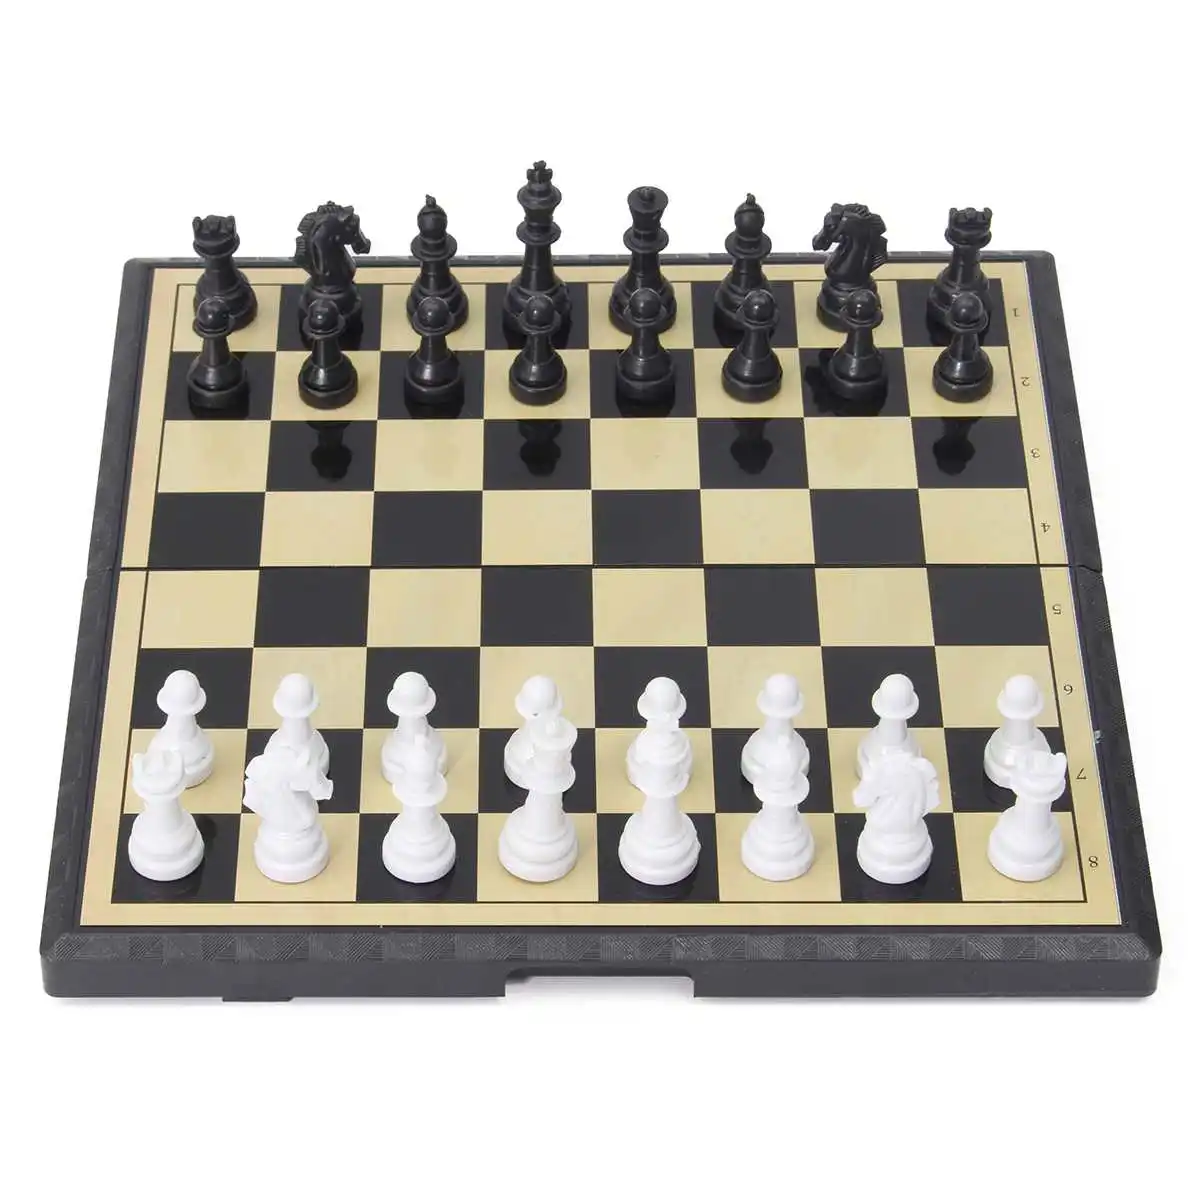 3 in 1 Folding Magnetische Schach Bord Spiele Set Spielzeug Backgammon 